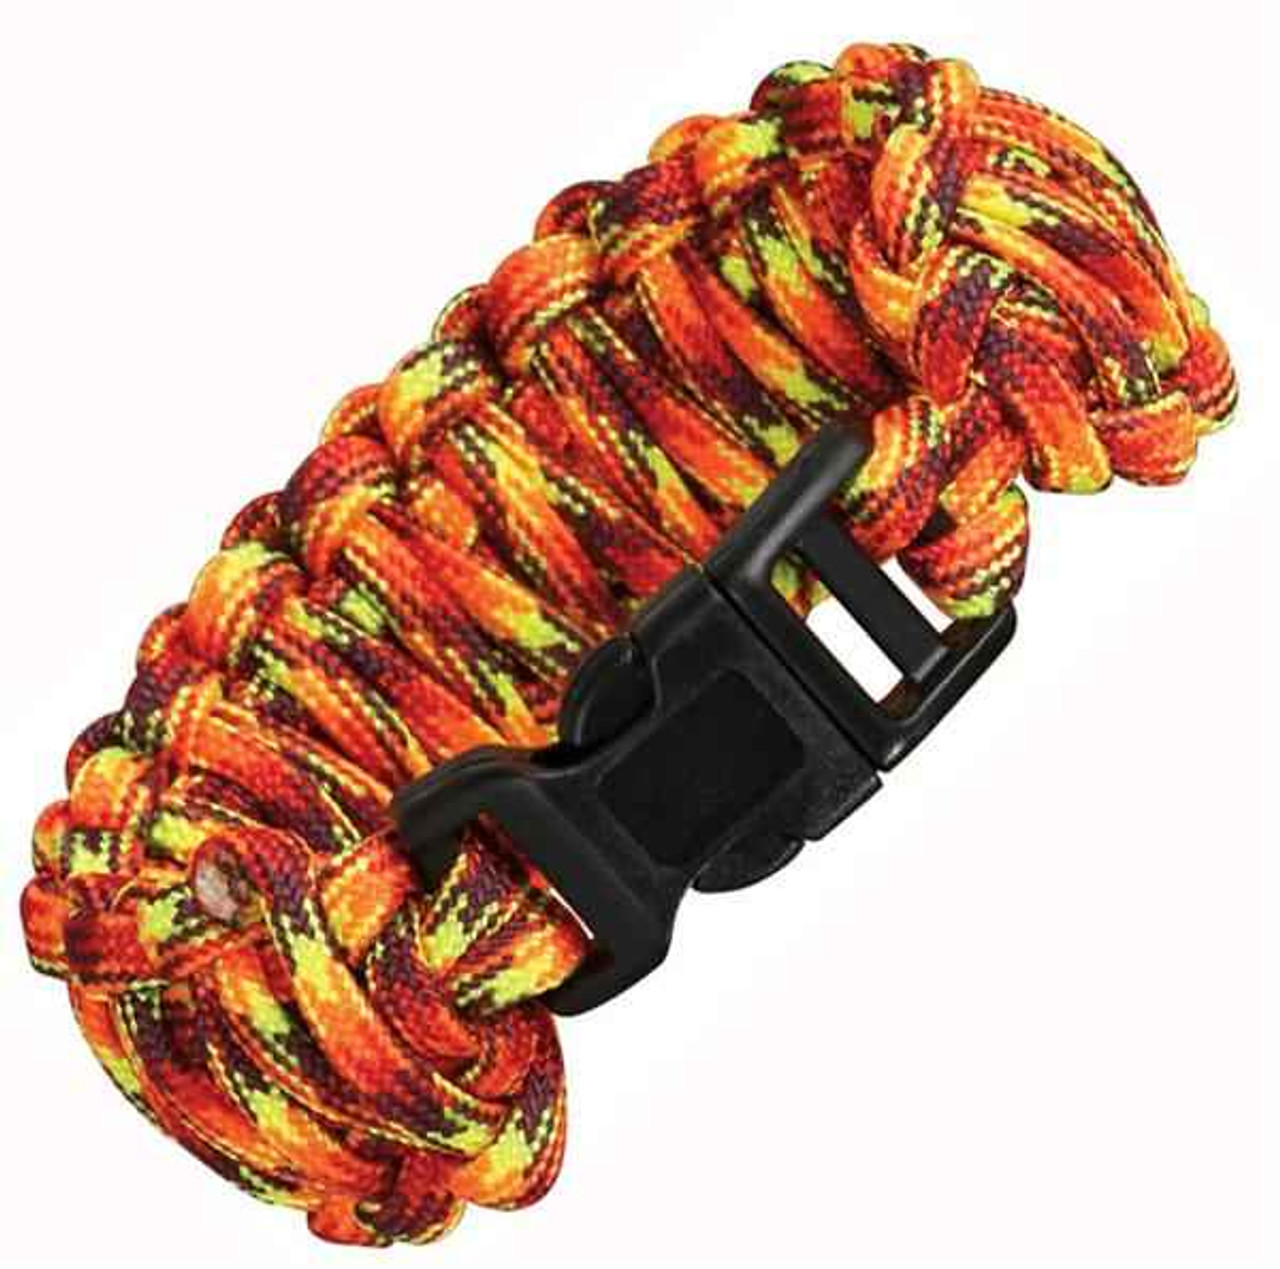 Knotty Boys Fire Survival Bracelet Fat Boy style. Size: Medium